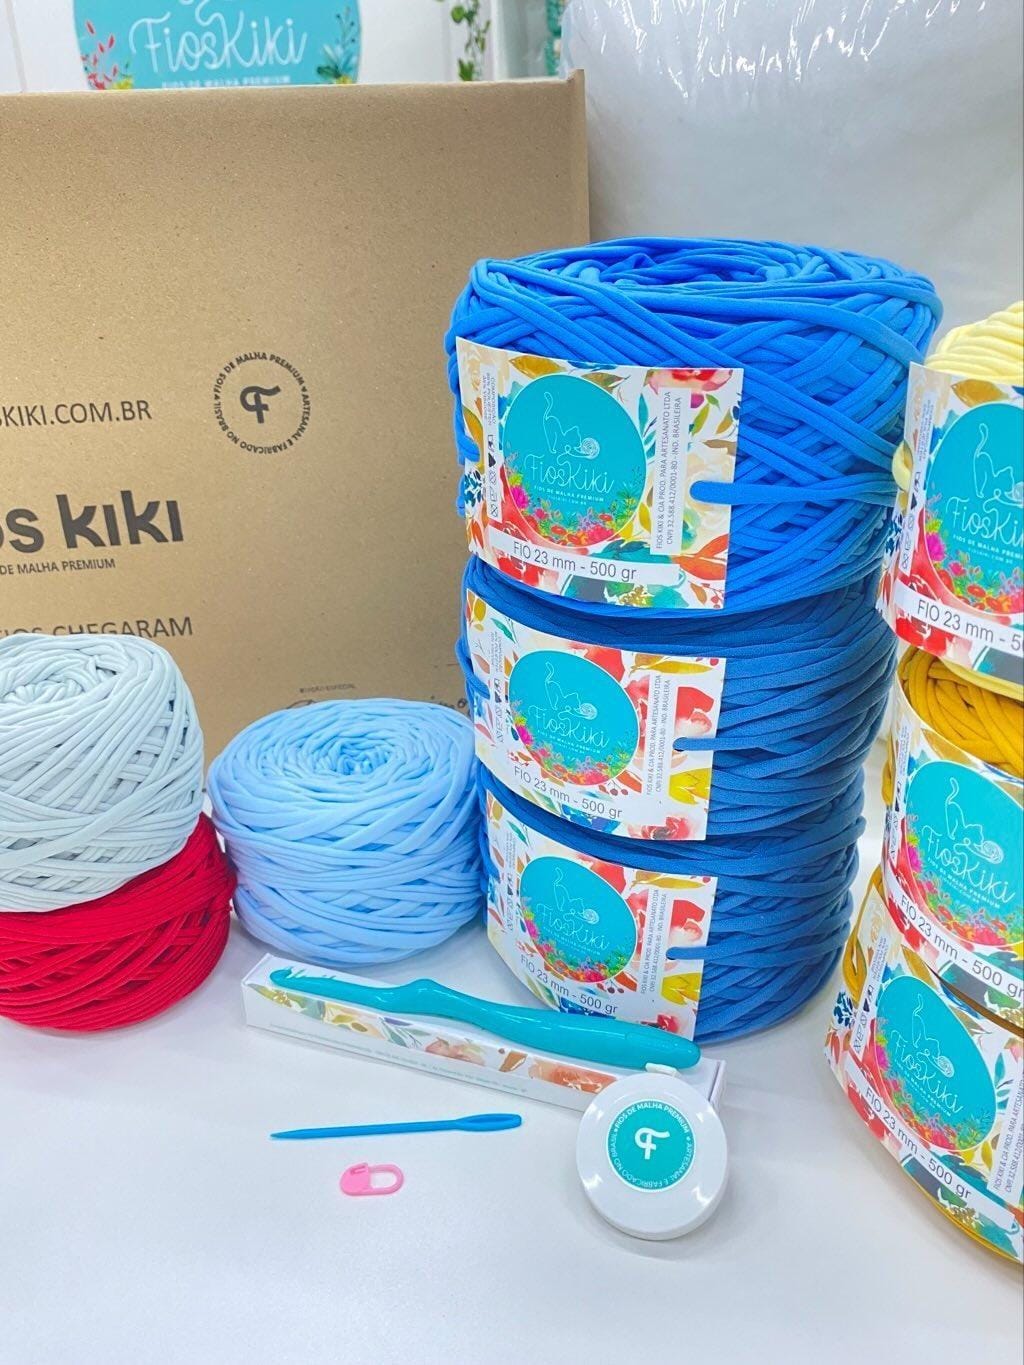 Fios Kiki - Kit Coleção de Almofadas Decorativas 2 por Decora Mimos Croche  - Fios Kiki Fios de Malha Premium